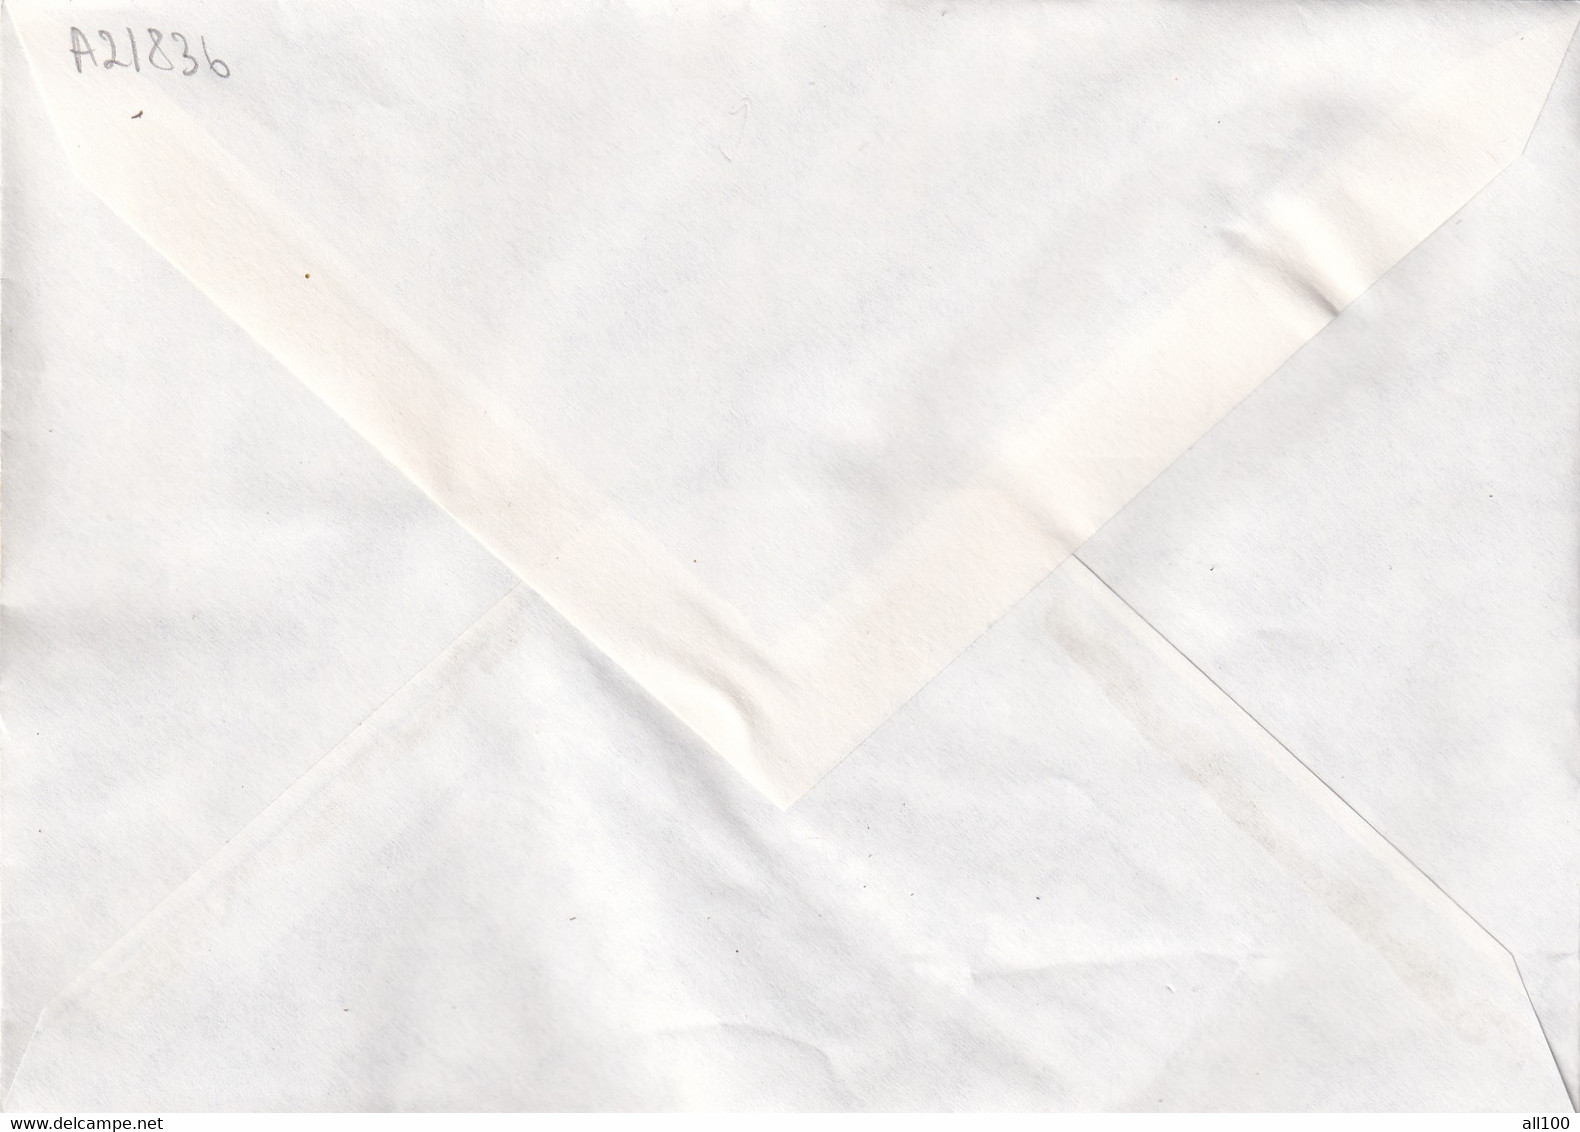 A21836 - Temple De Borobudur Premier Jour Paris Cover Envelope Unused 1979 France Stamp Buddhism - Buddhism